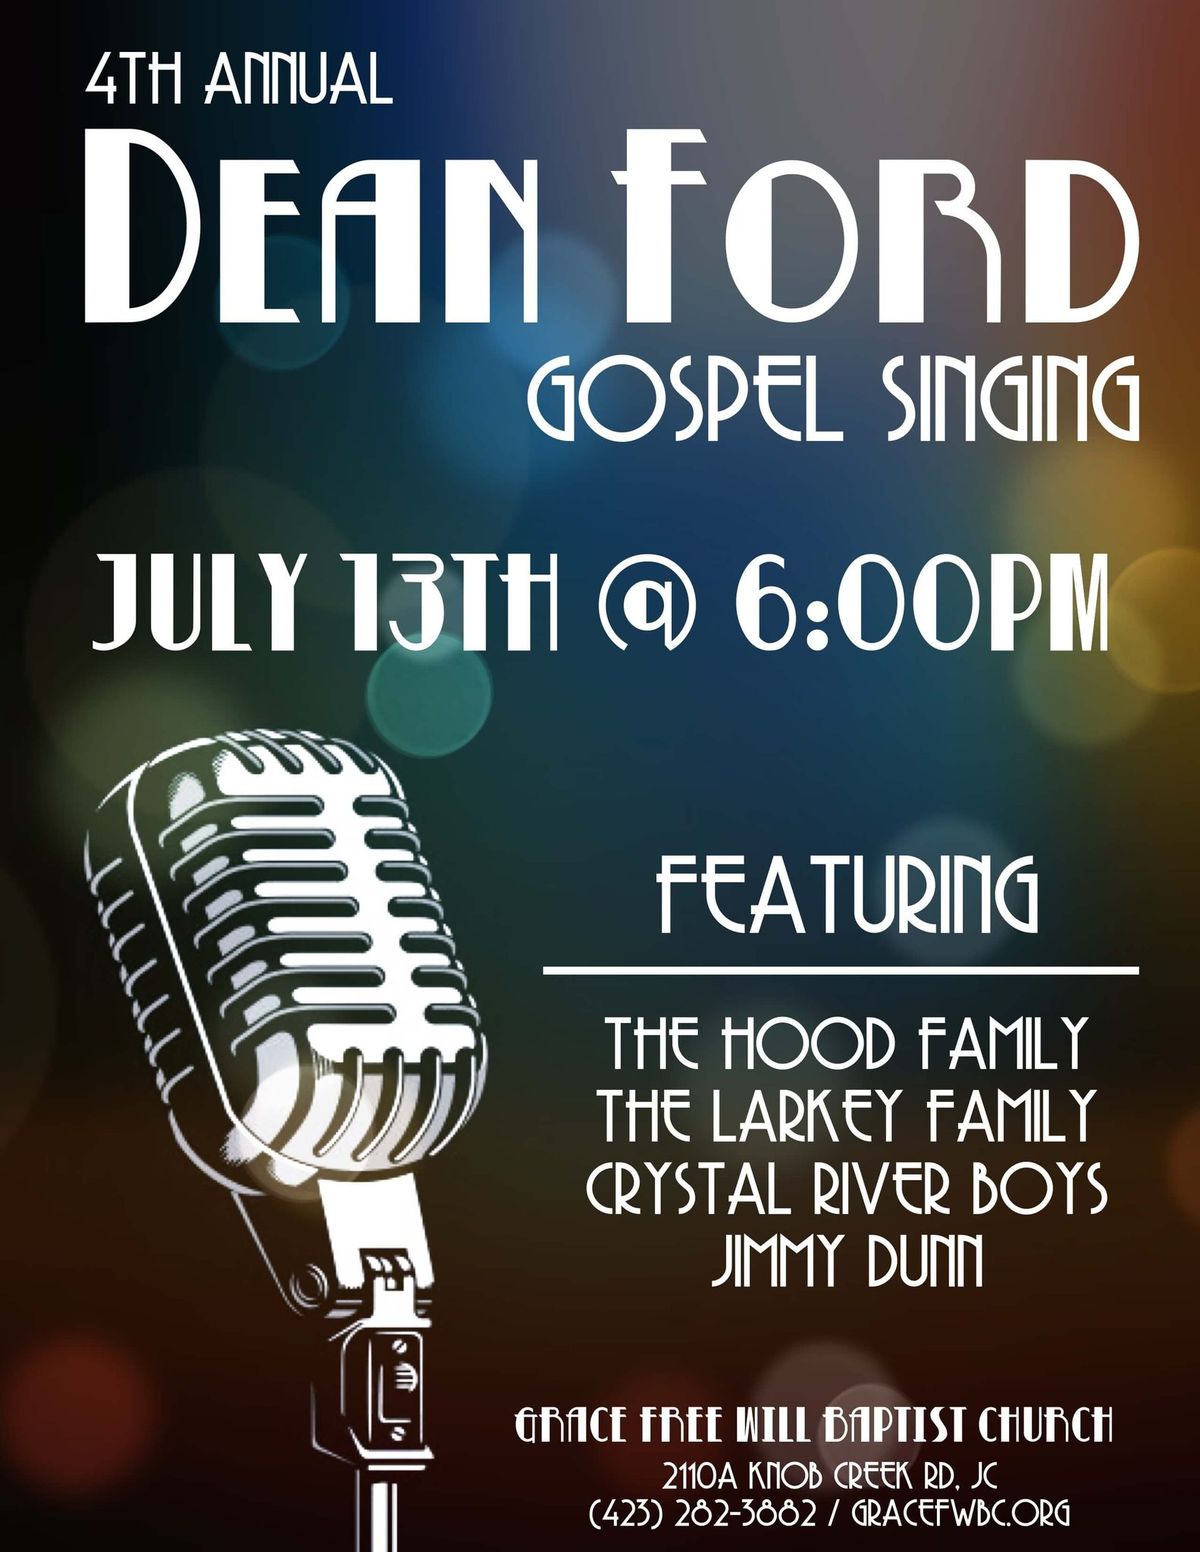 4th Annual Dean Ford Gospel Singing